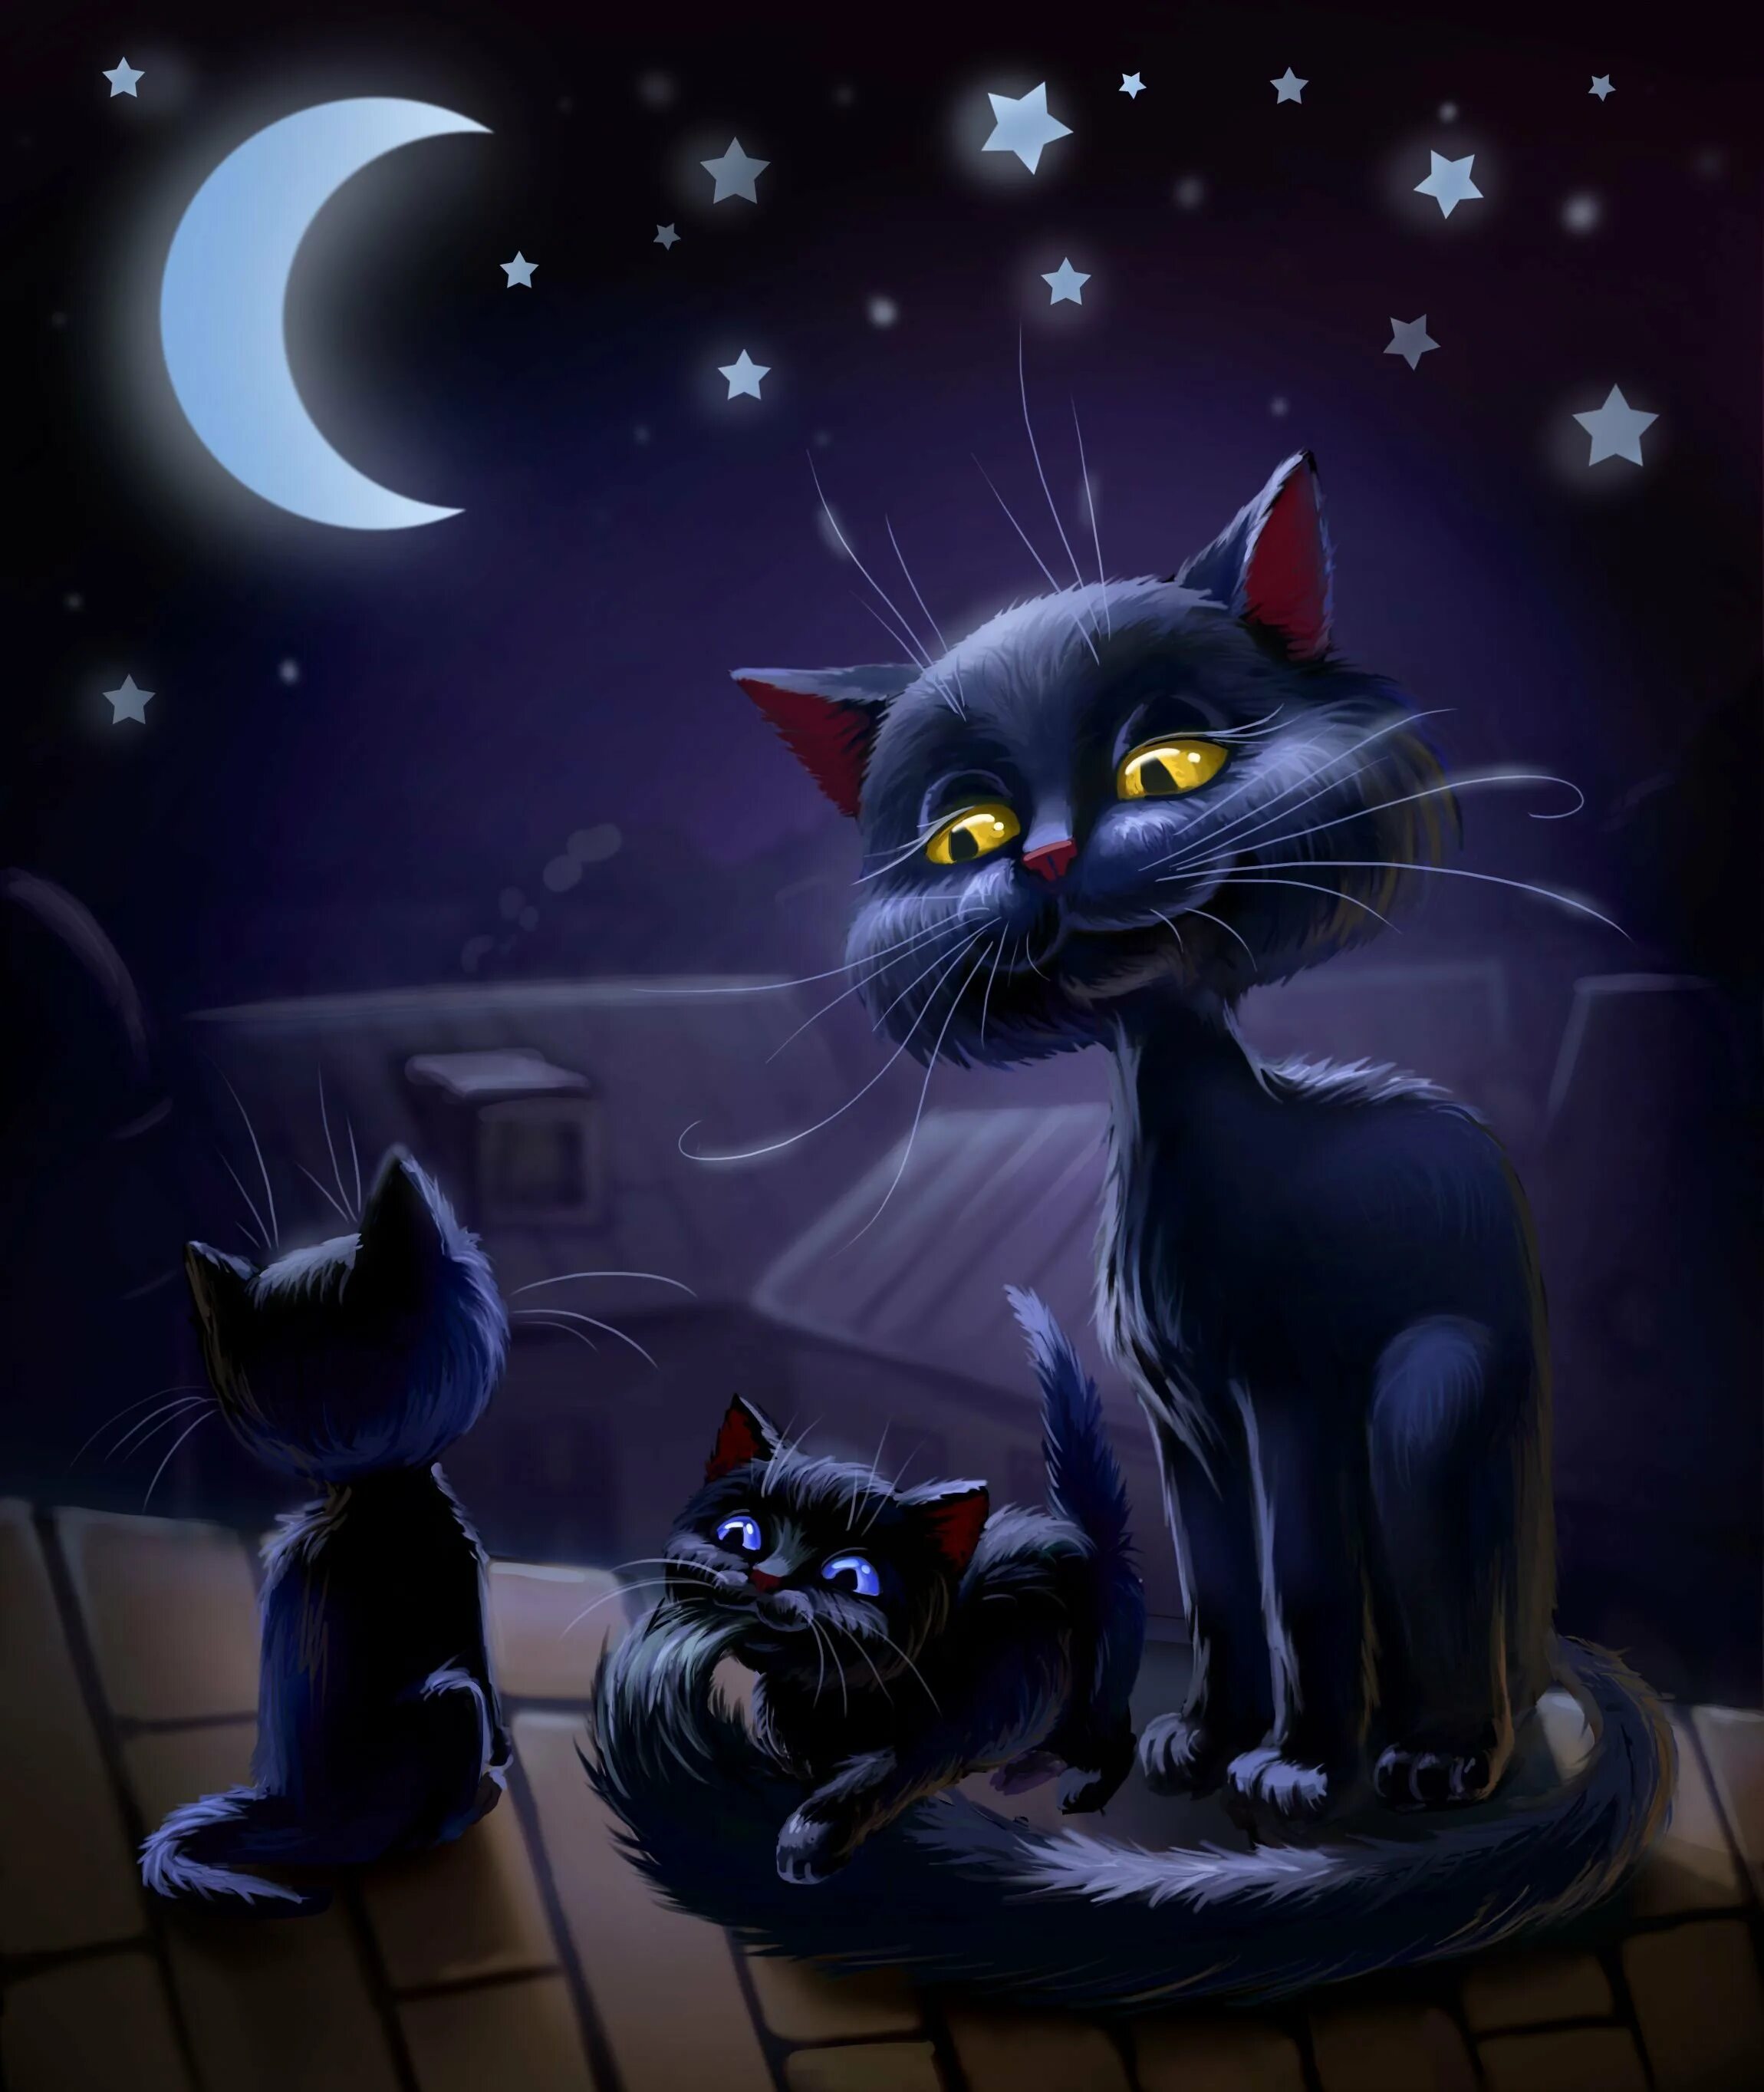 Картинки спокойной ночи с кошкой. Ночной кот. Вечера с котиком. Кот арт. "Лунный кот".